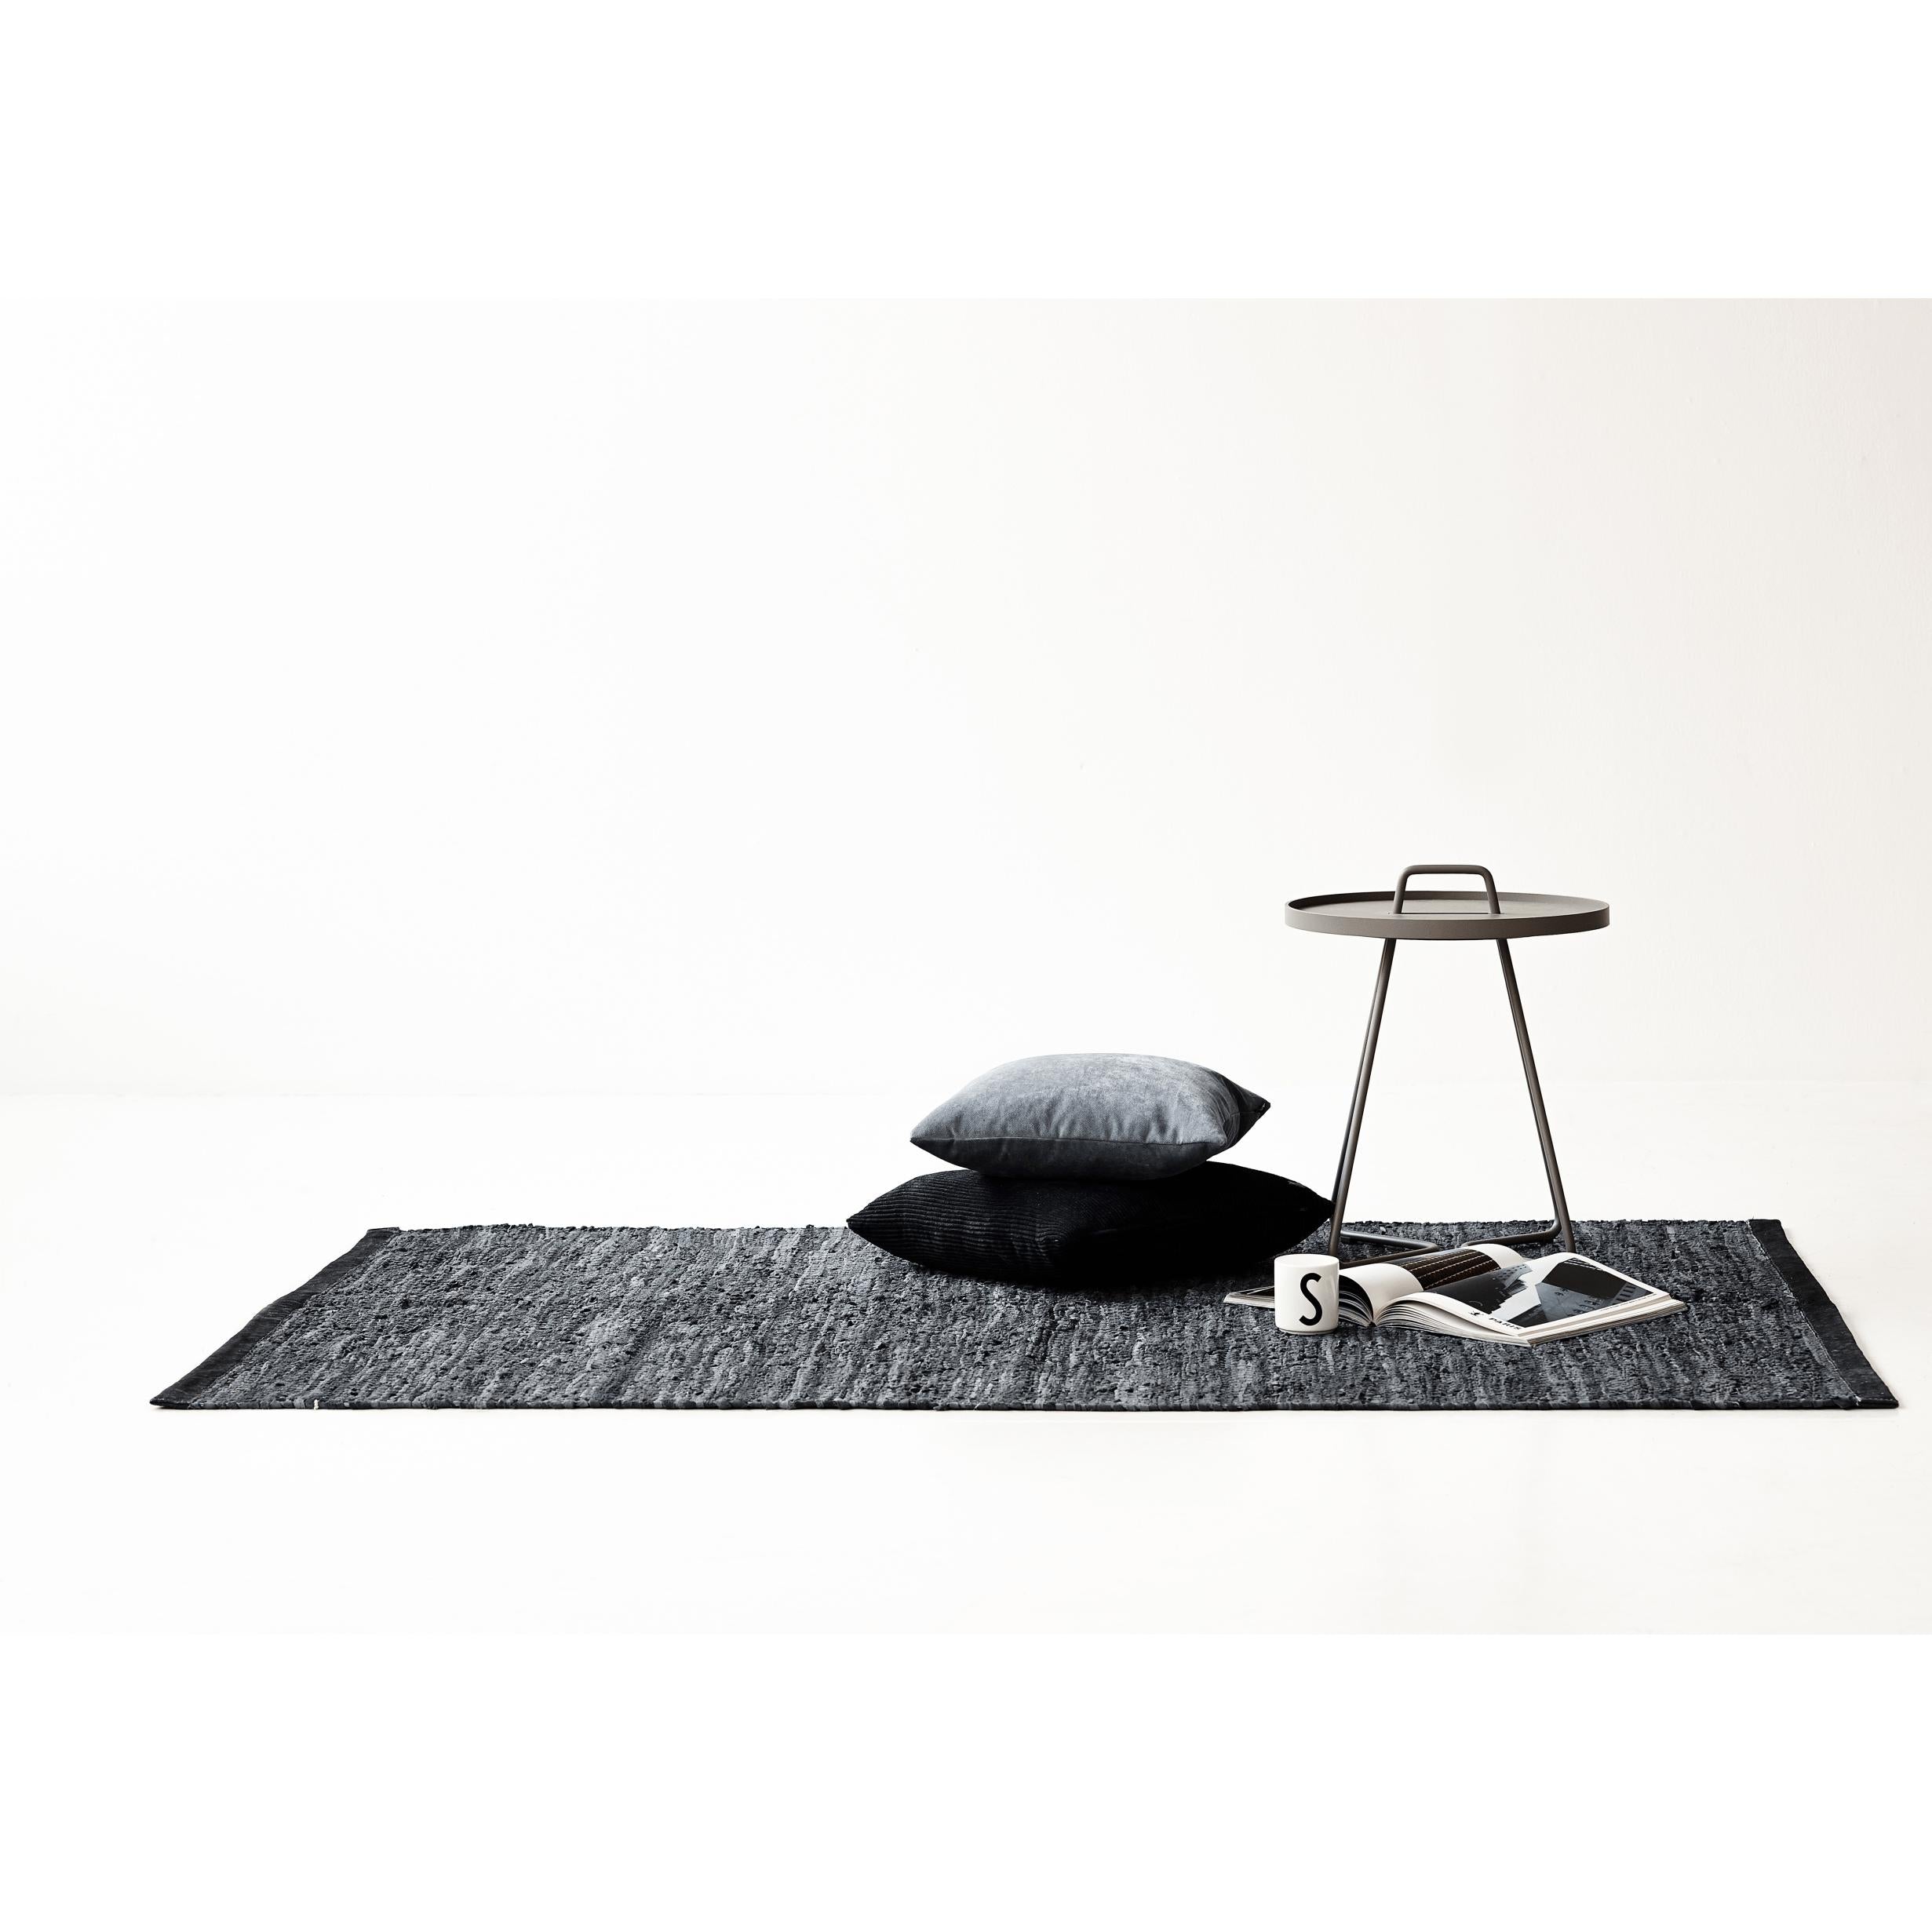 Rug Solid Läderfilt mörkgrå, 200 x 300 cm